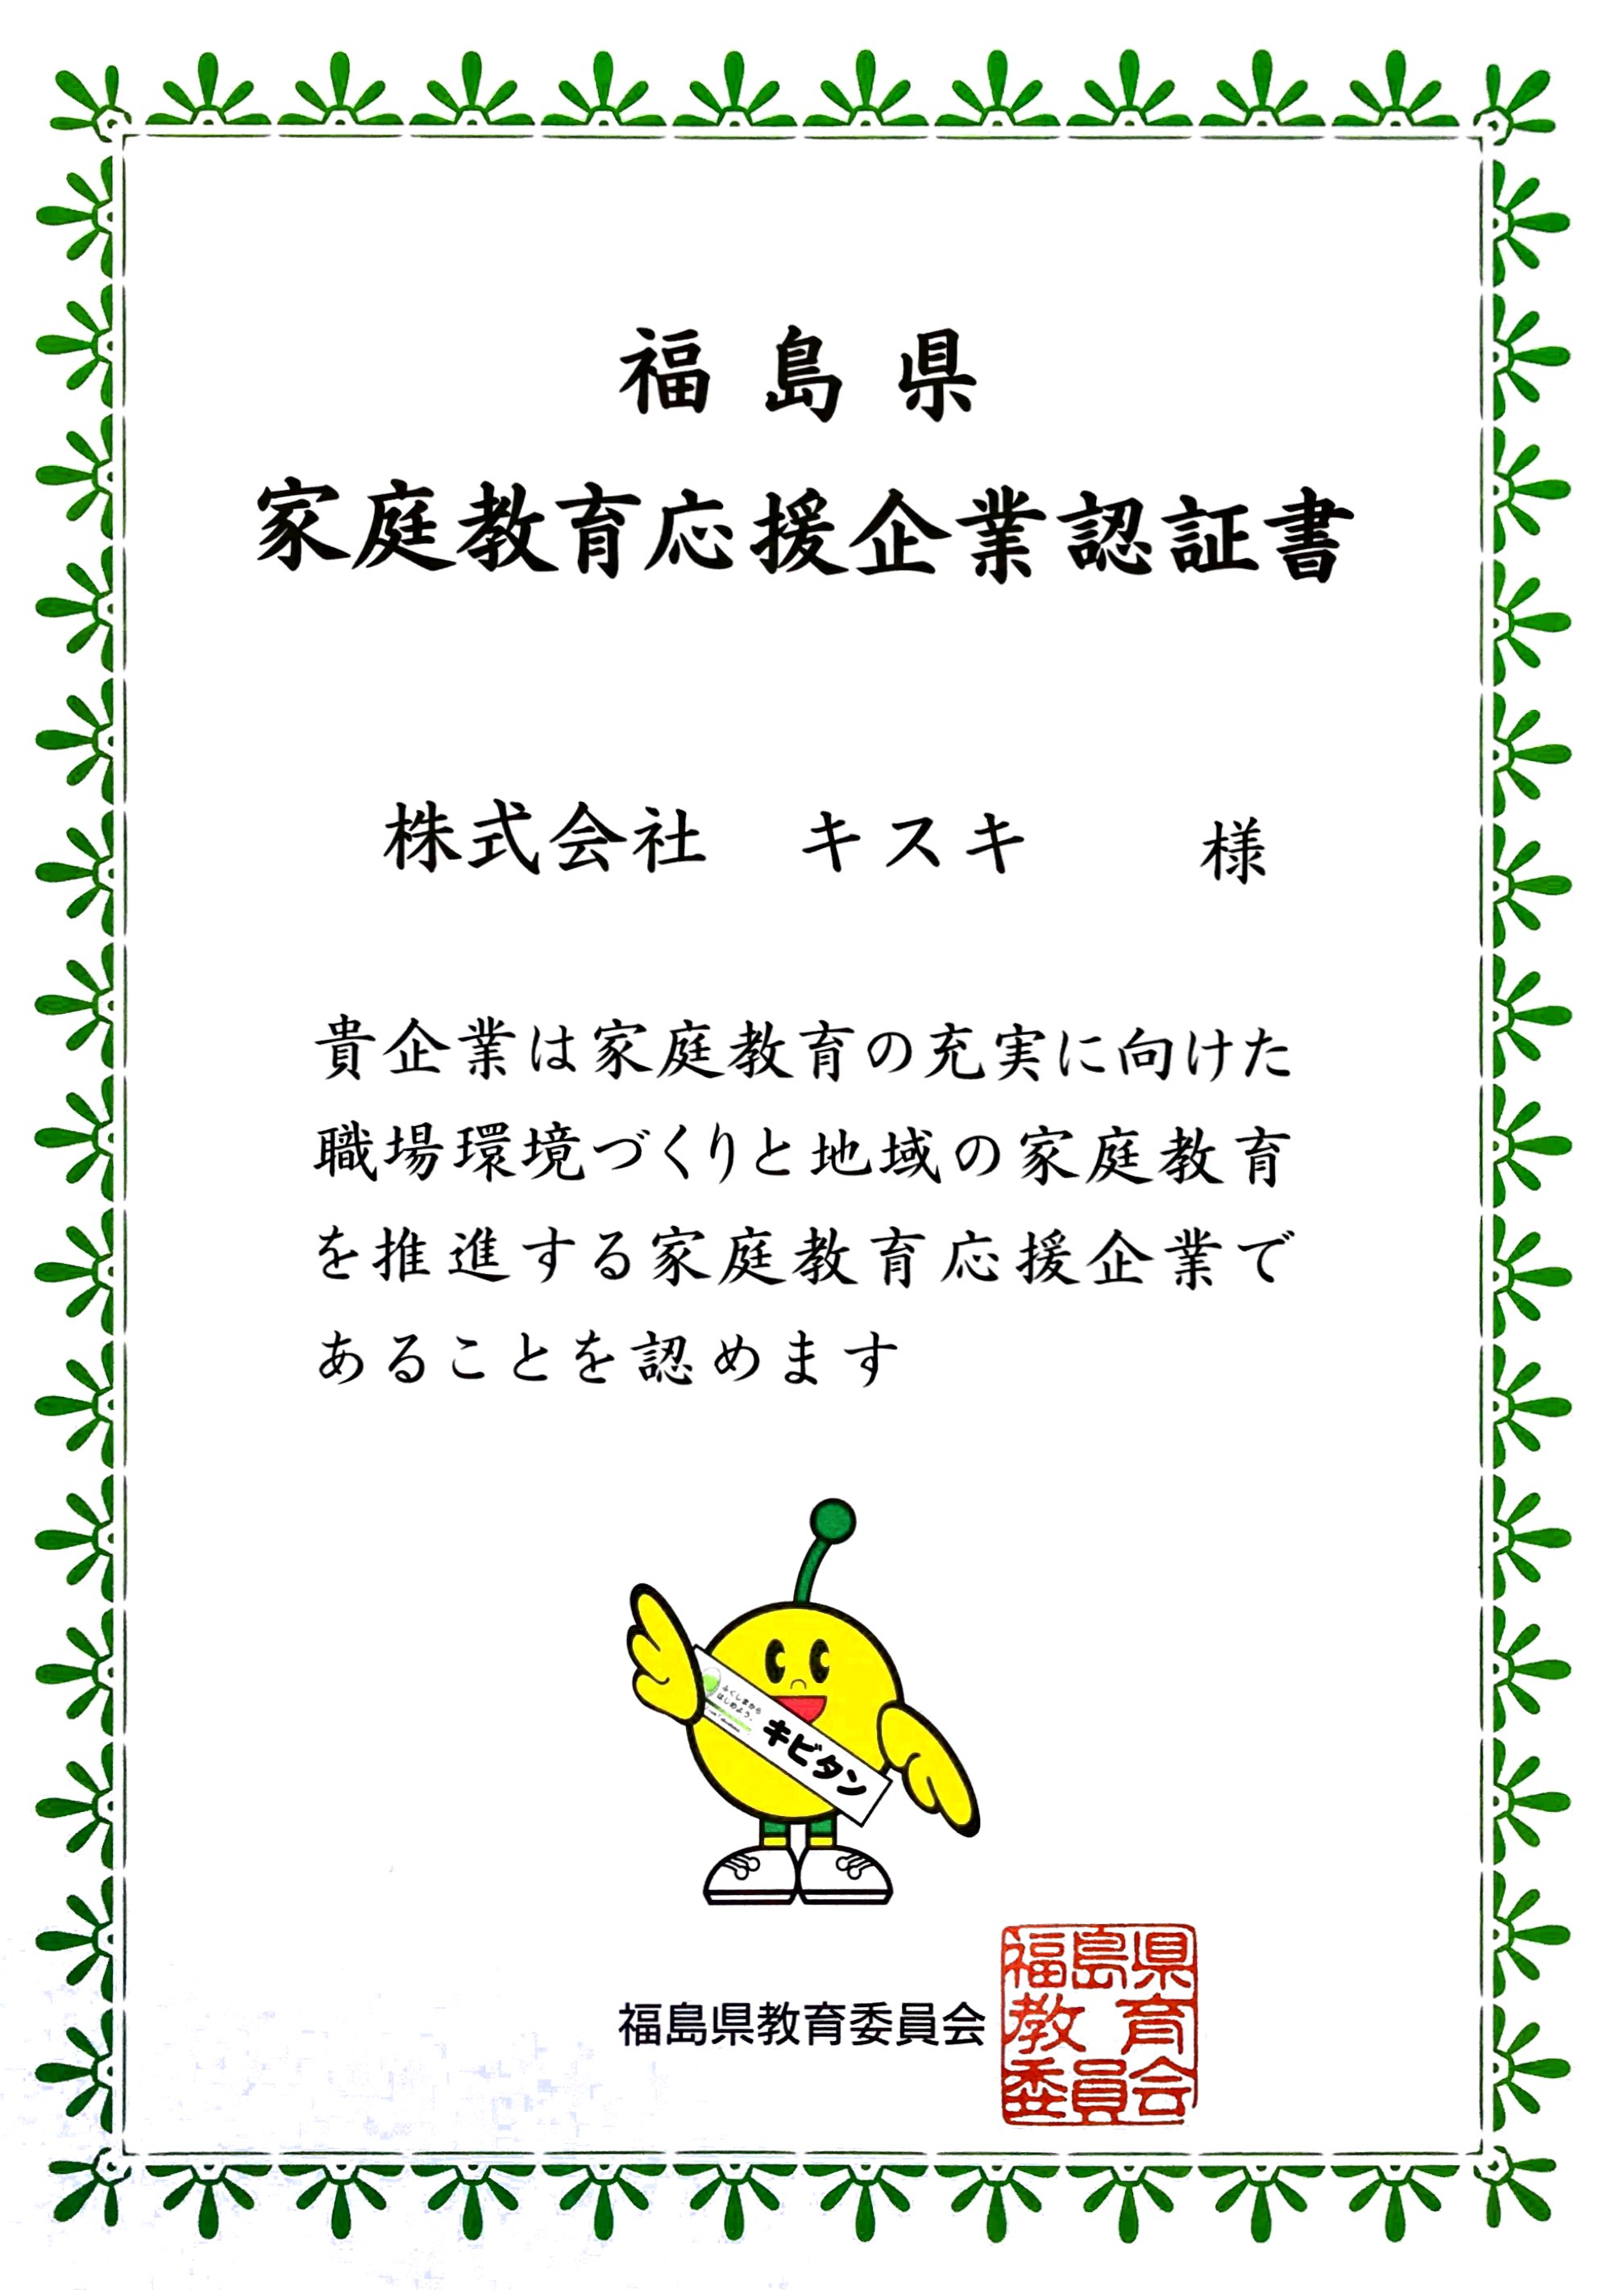 福島県家庭教育応援企業認証書